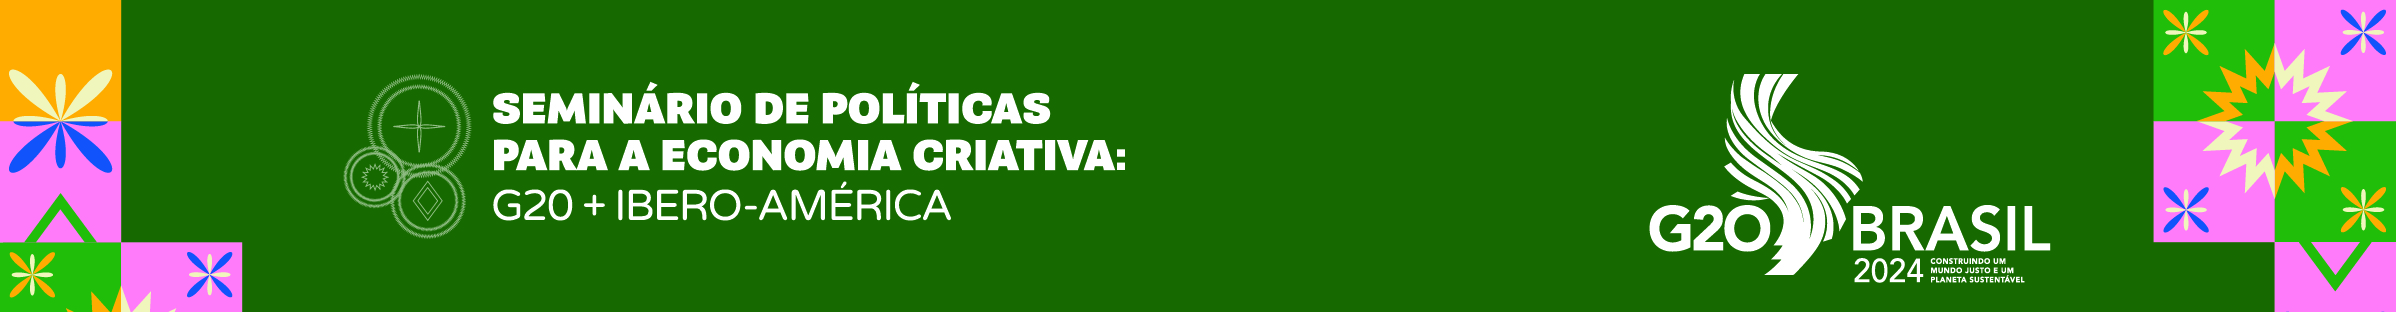 Banner verde com a logo do G20 Brasil e do Seminário de Políticas Para a Economia Criativa. Texto: 7 a 9 de agosto. RJ.